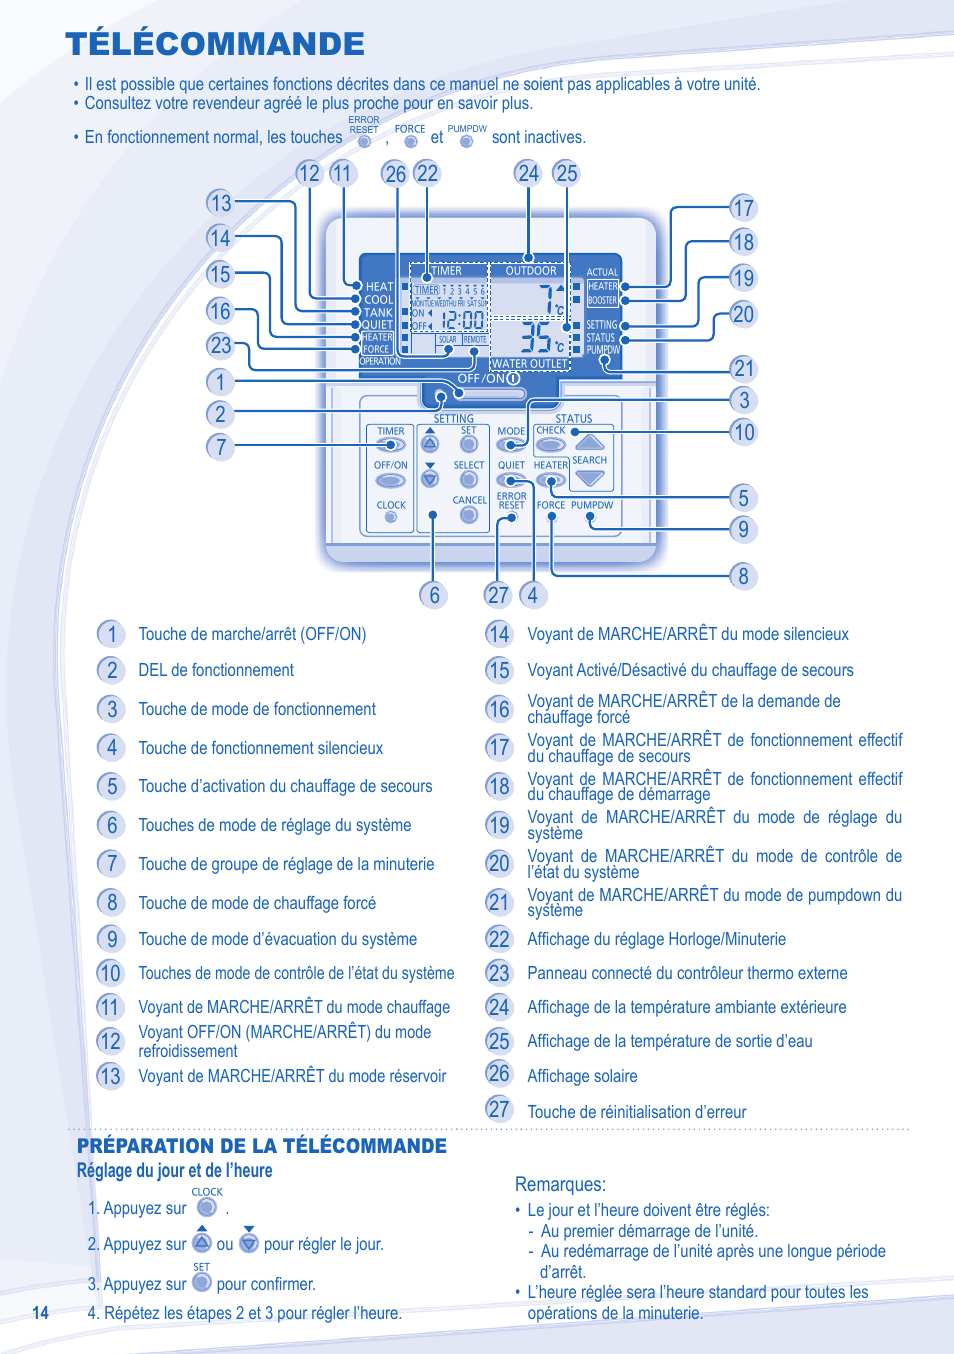 Télécommande | Panasonic WHMDC12C6E5 Manuel d'utilisation | Page 4 / 12